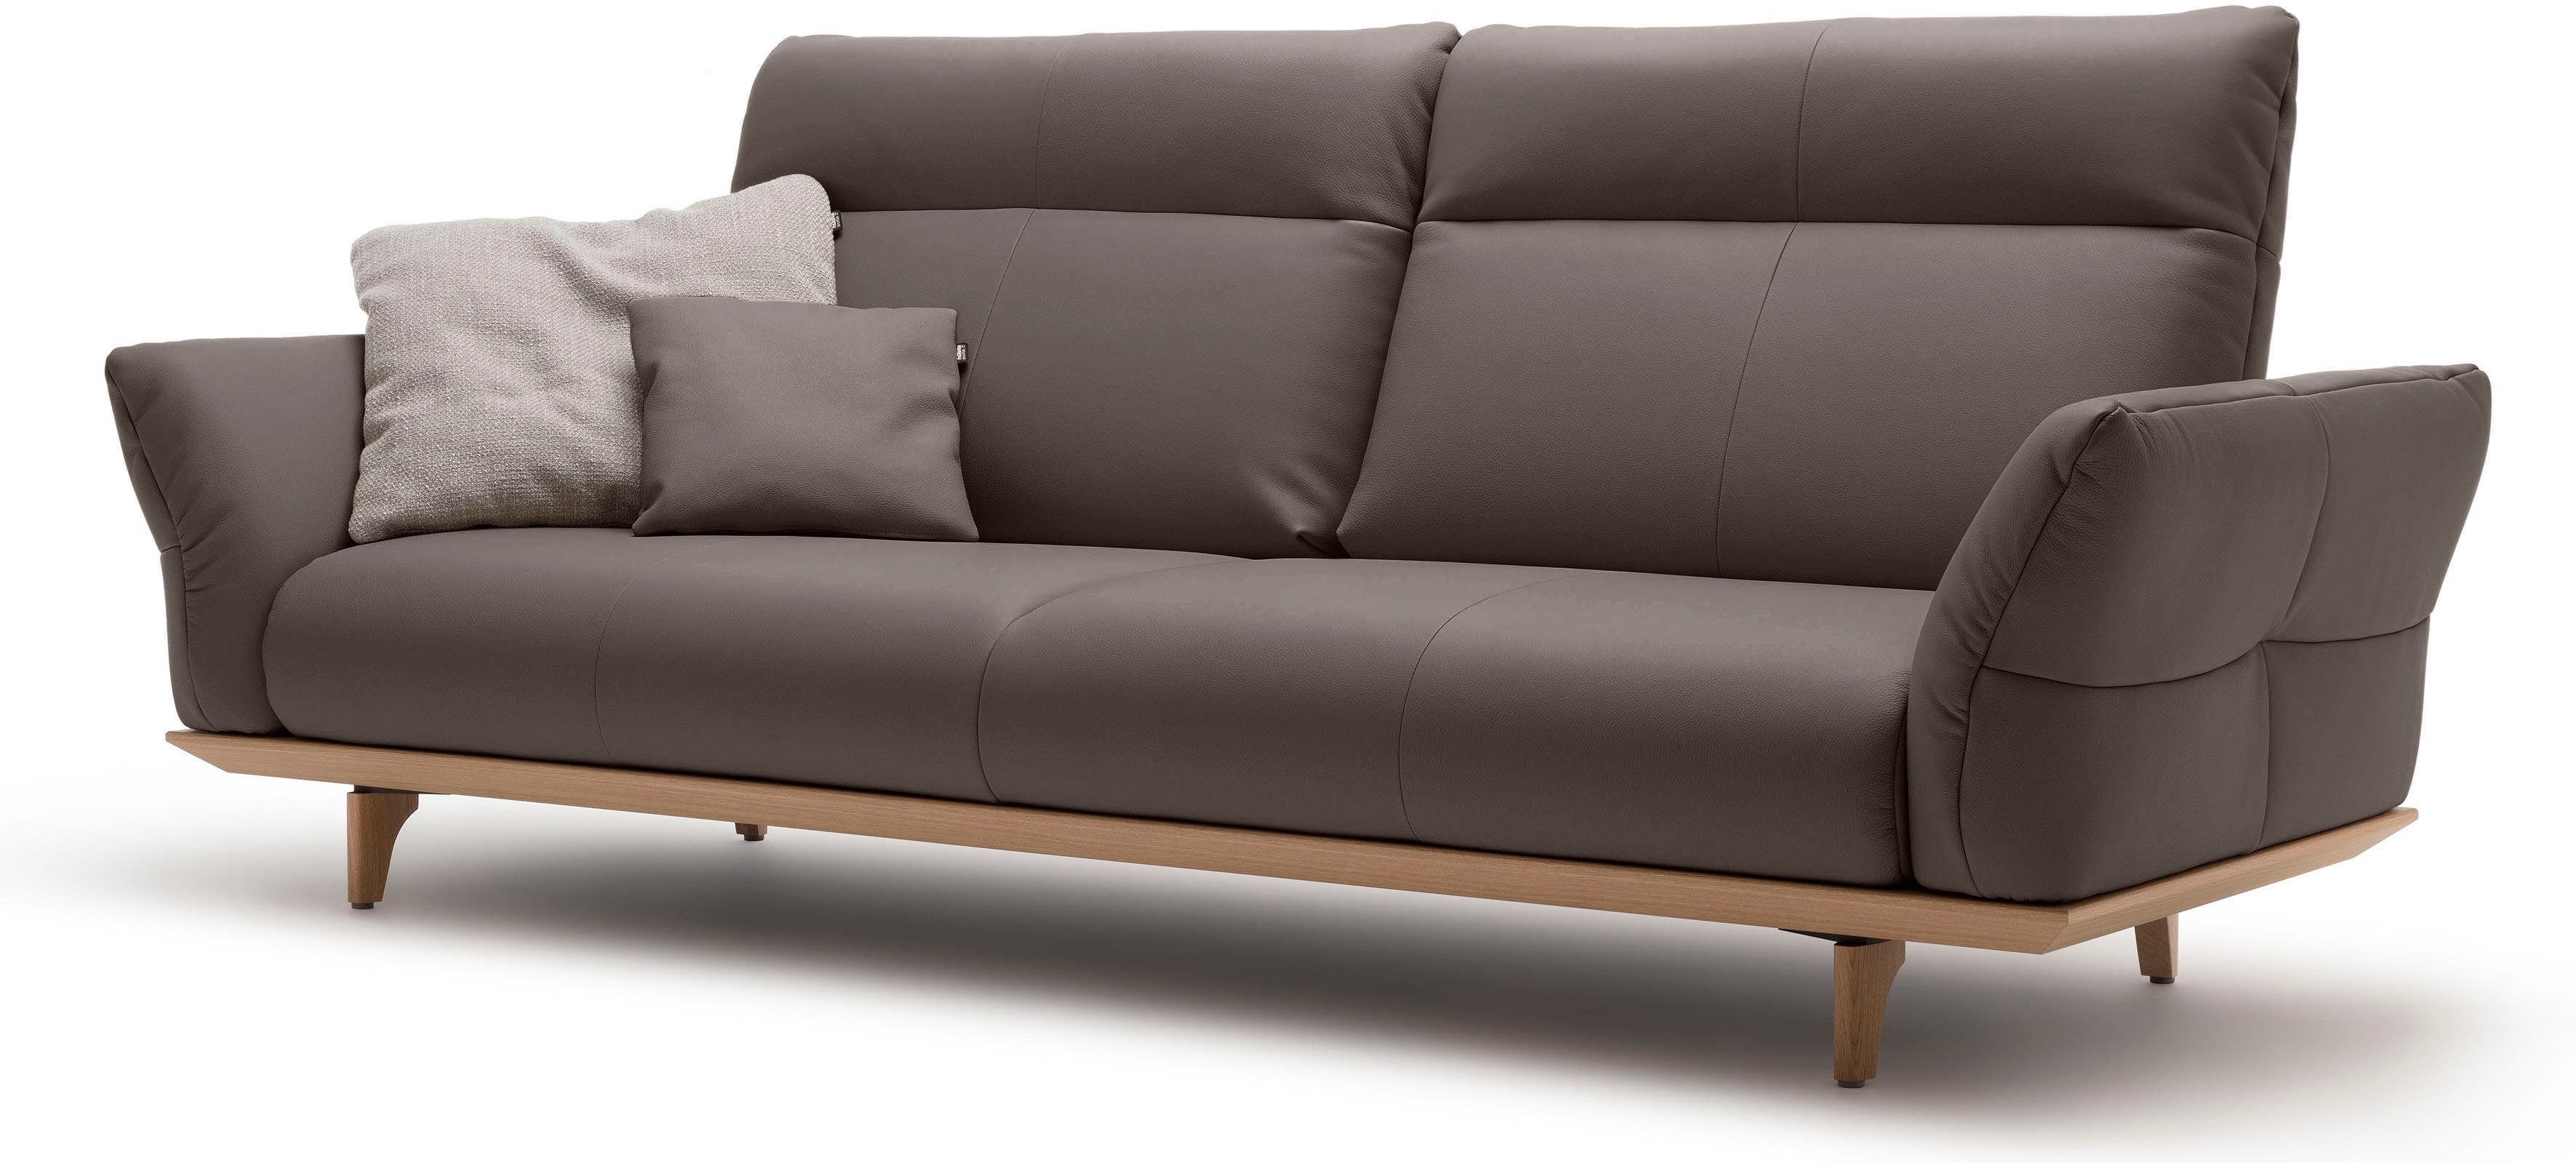 hülsta sofa 3,5-Sitzer Eiche, hs.460, cm in Füße 228 Sockel Breite natur, Eiche